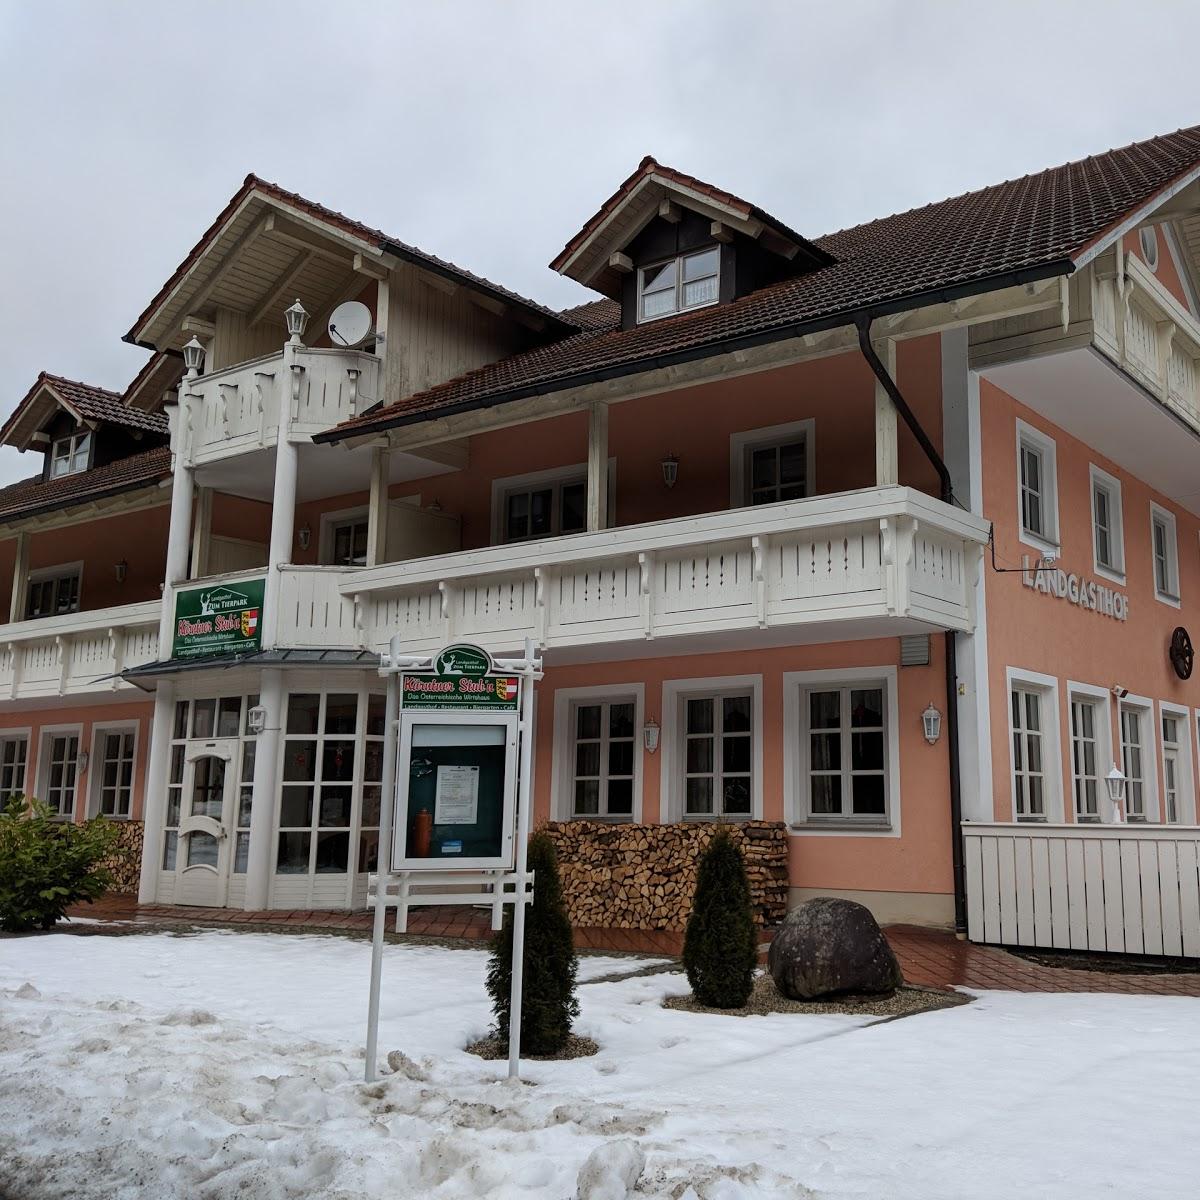 Restaurant "Landgasthof zum Tierpark" in Lohberg